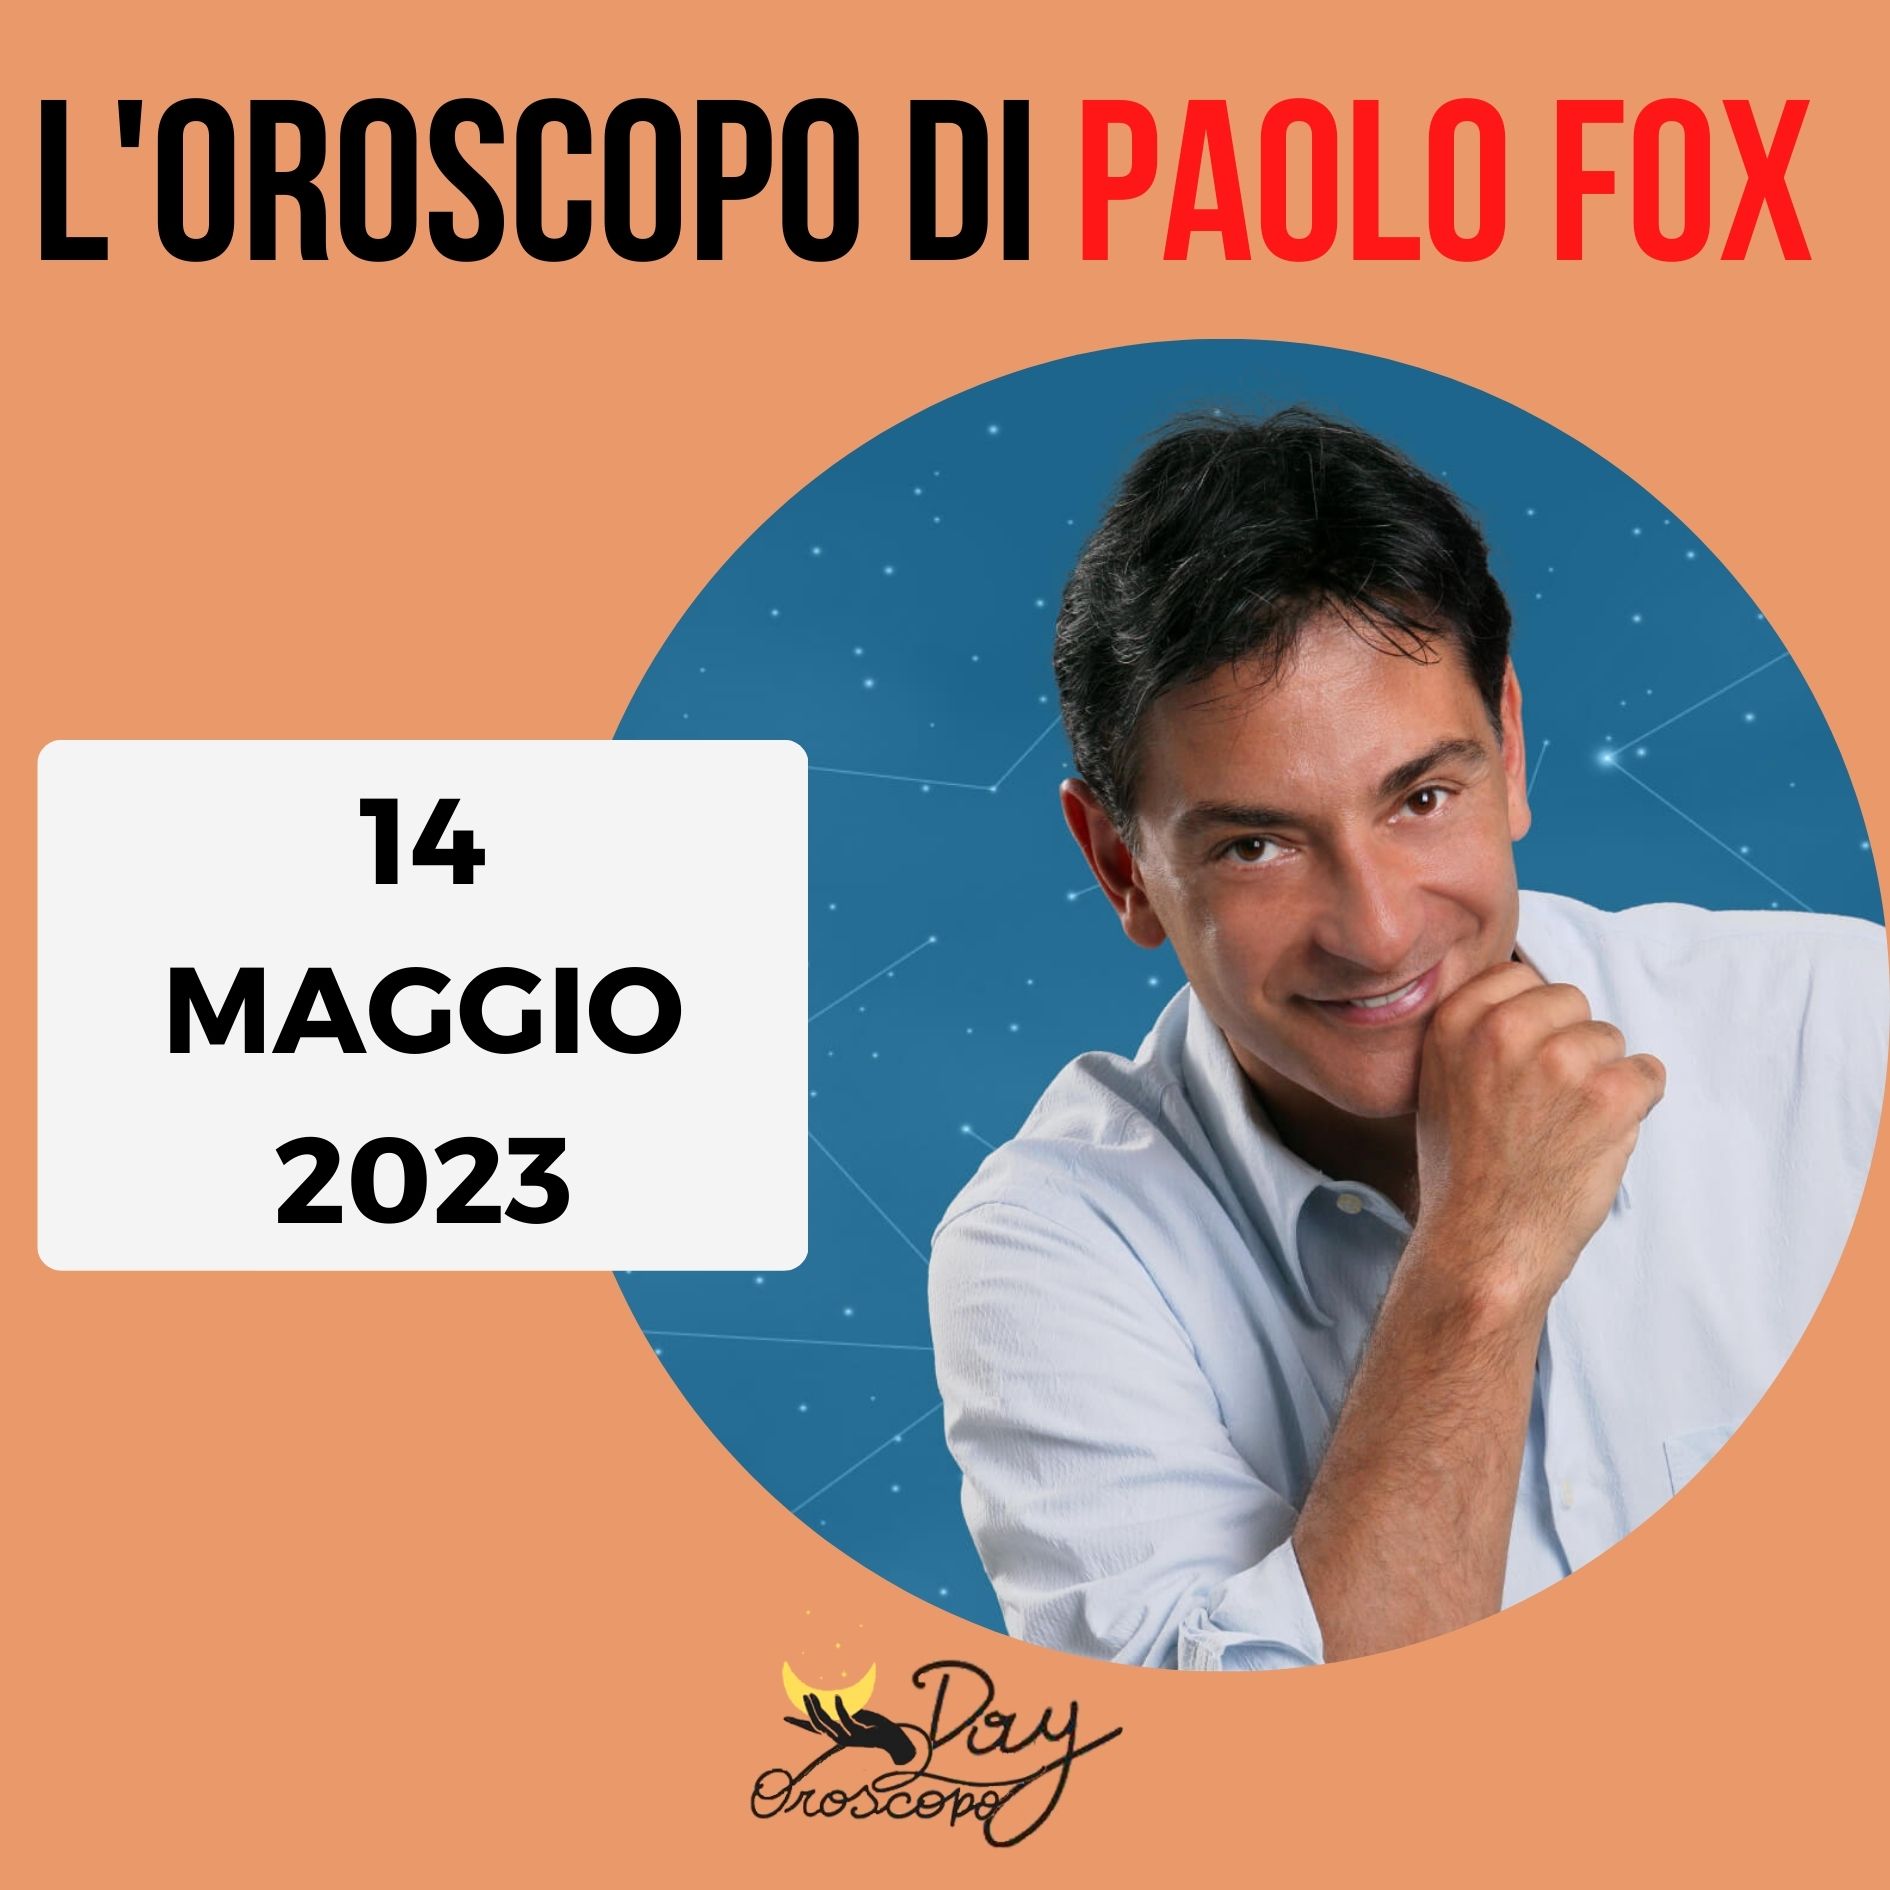 Oroscopo oggi domani Paolo Fox 14 maggio 2023